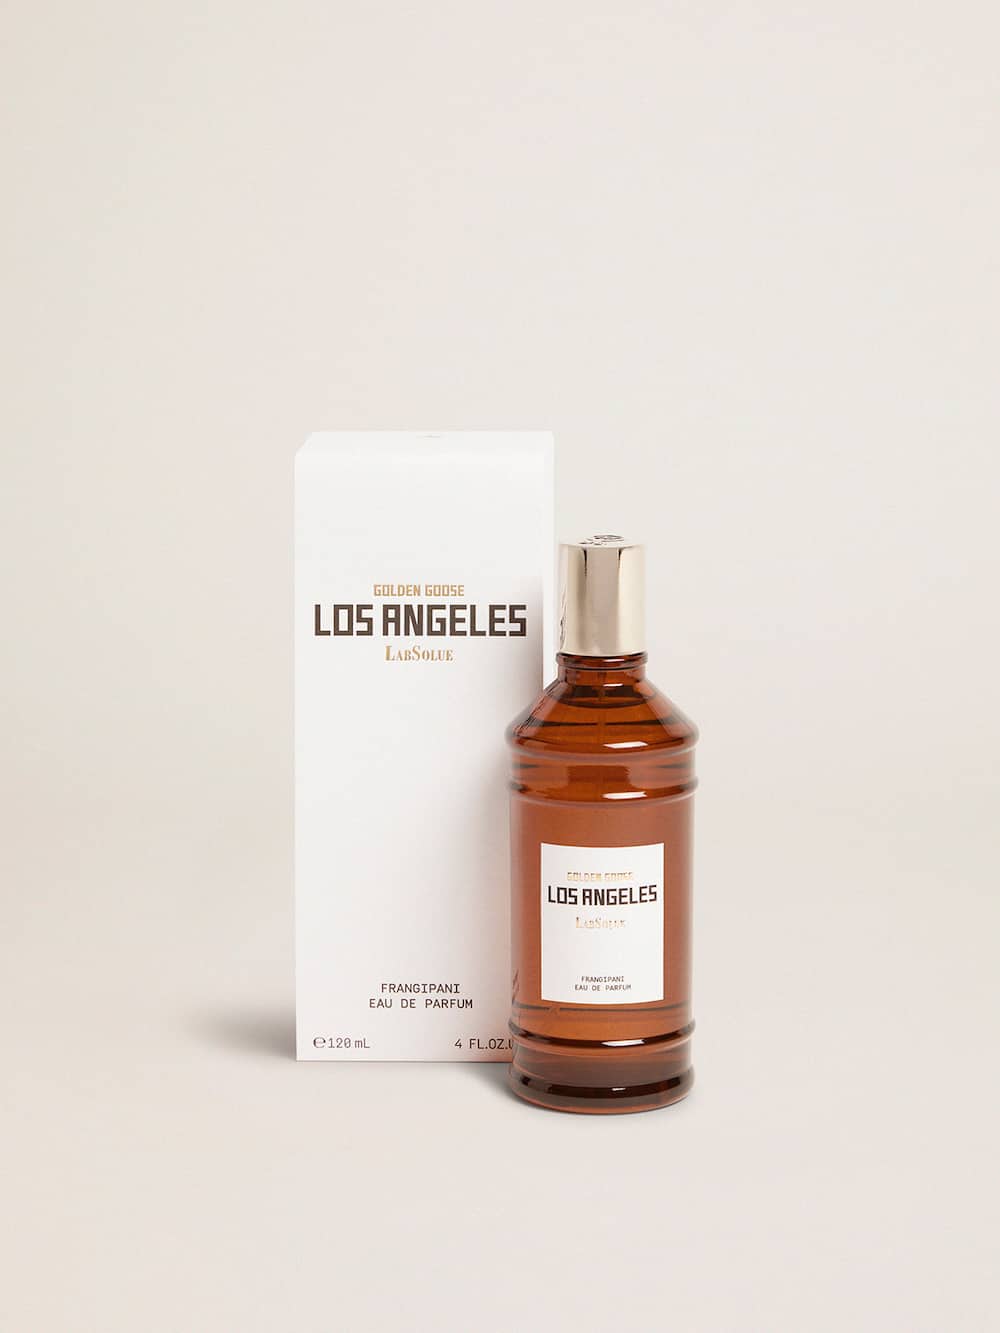 Golden Goose - Los Angeles Essence Frangipanier Eau de Parfum 120 ml in 